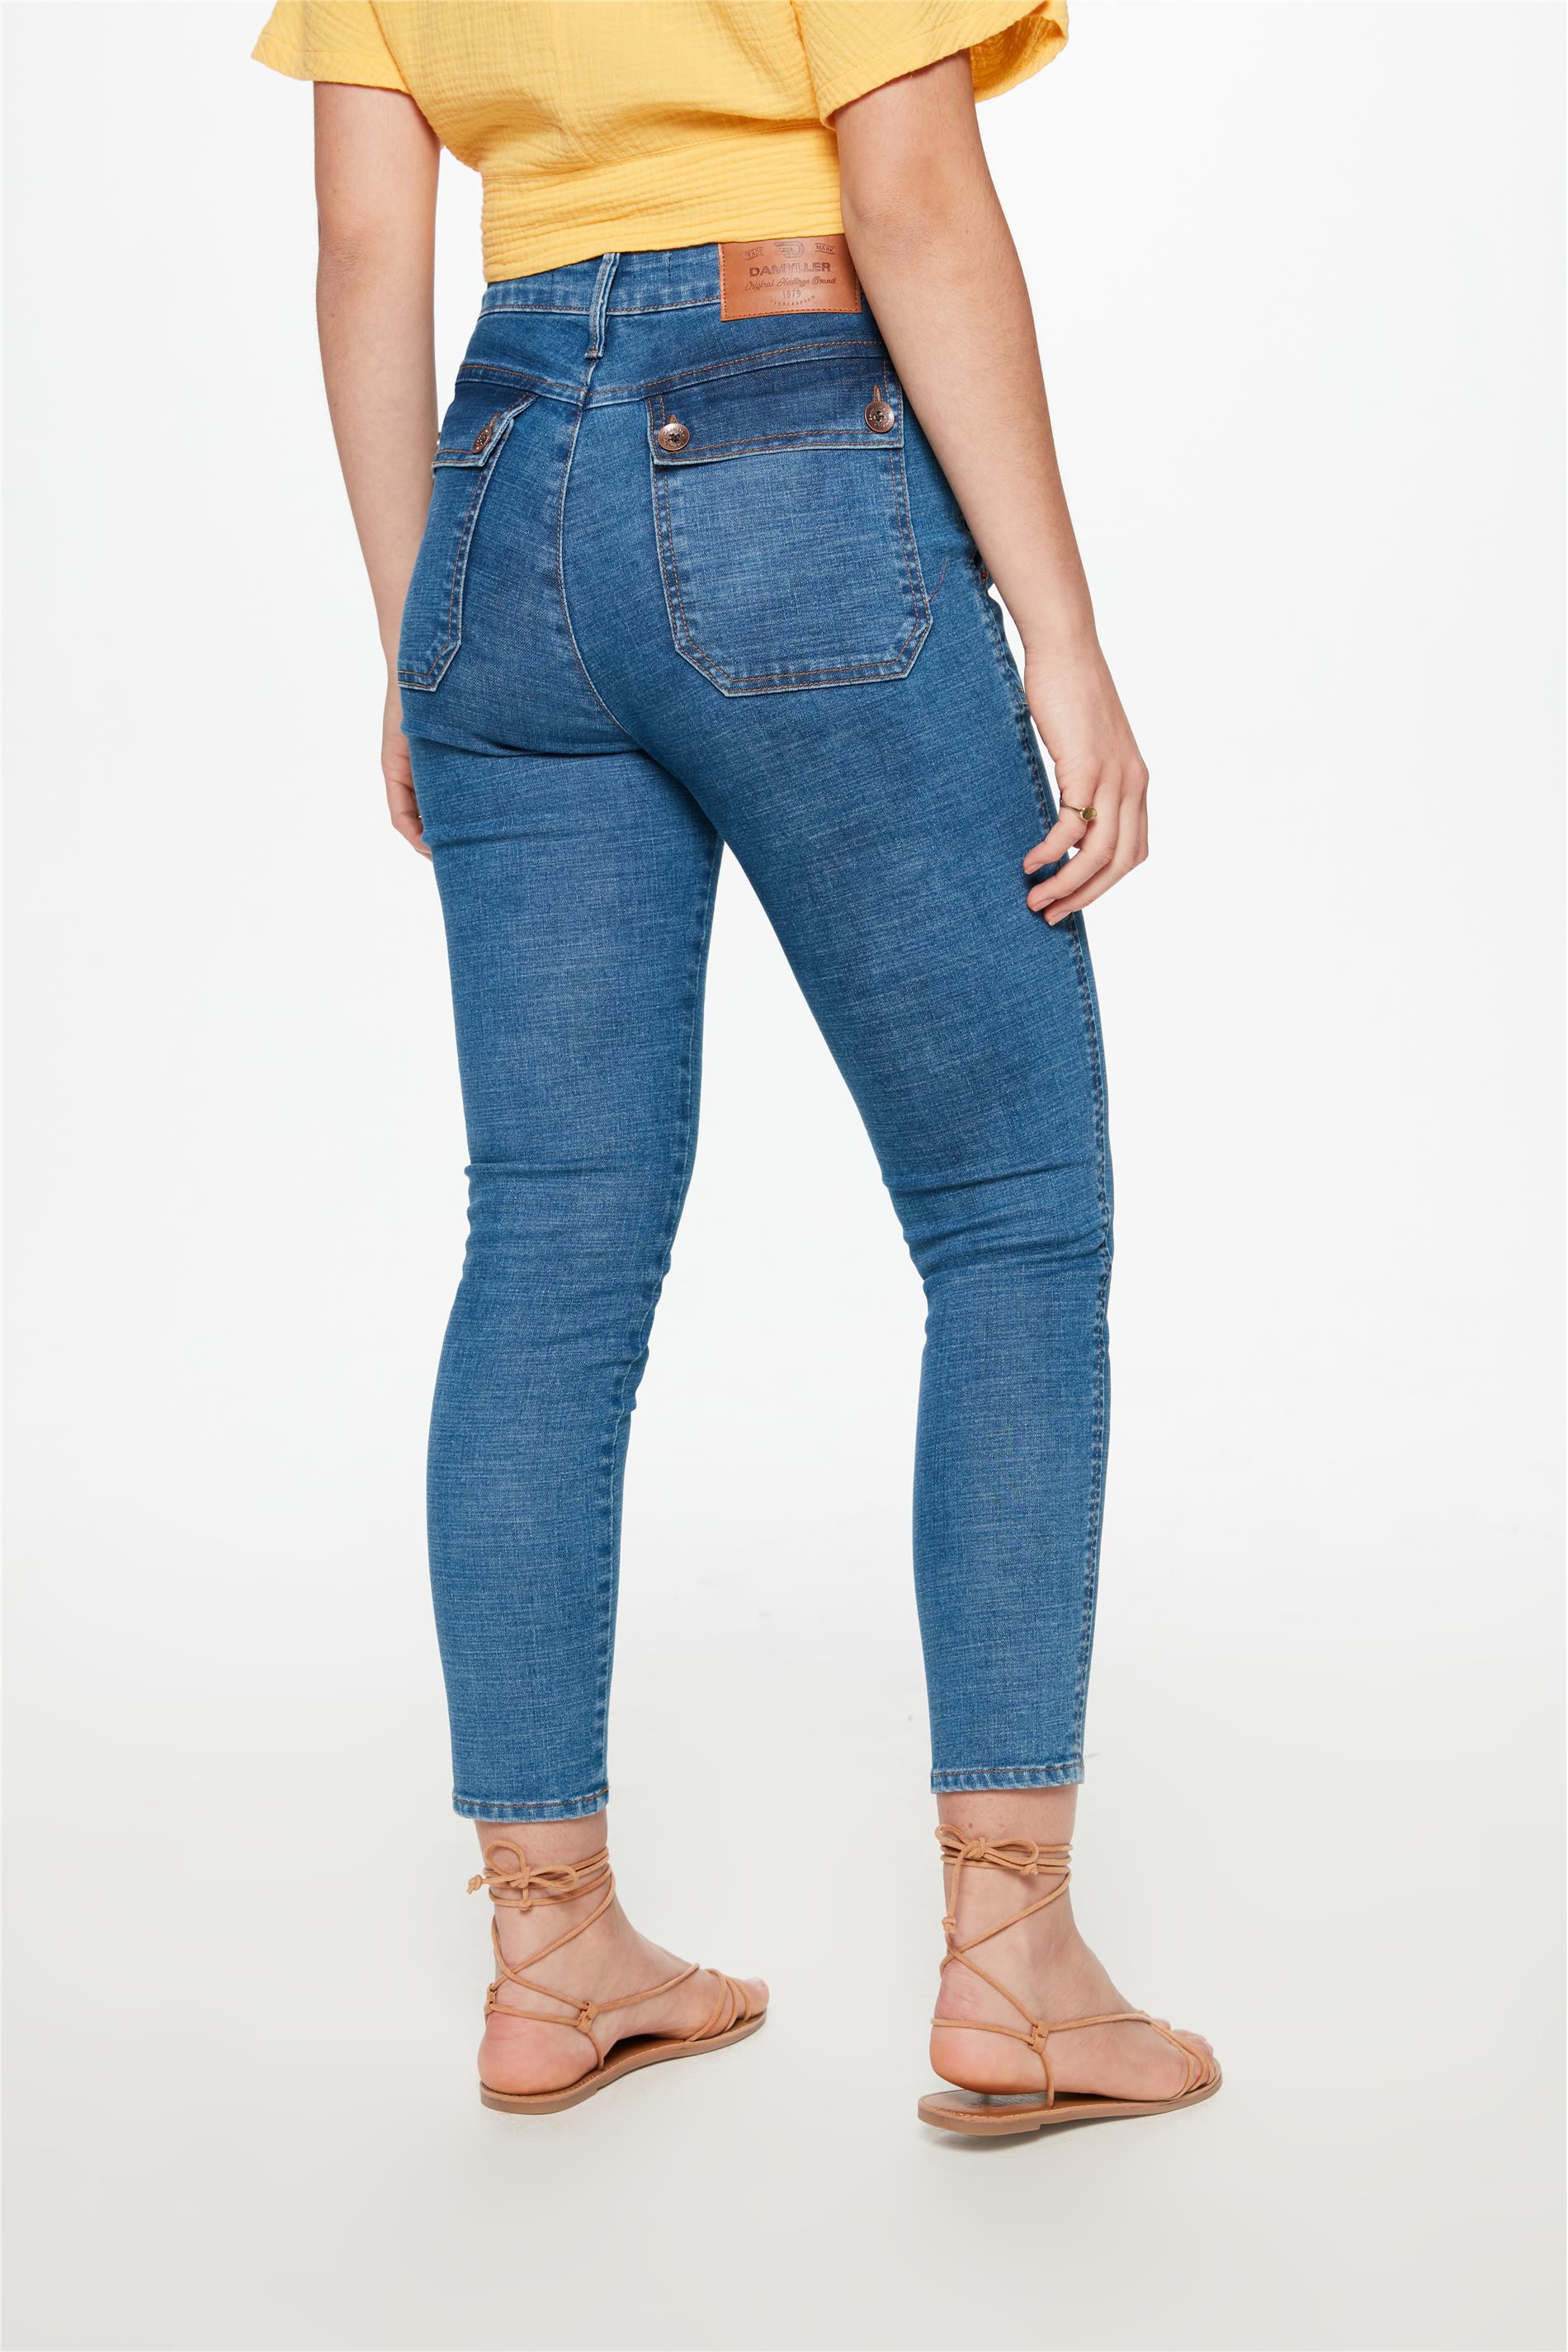 Calça Jeans Masculina Slim com Recortes - Damyller - O Jeans da Vida Real